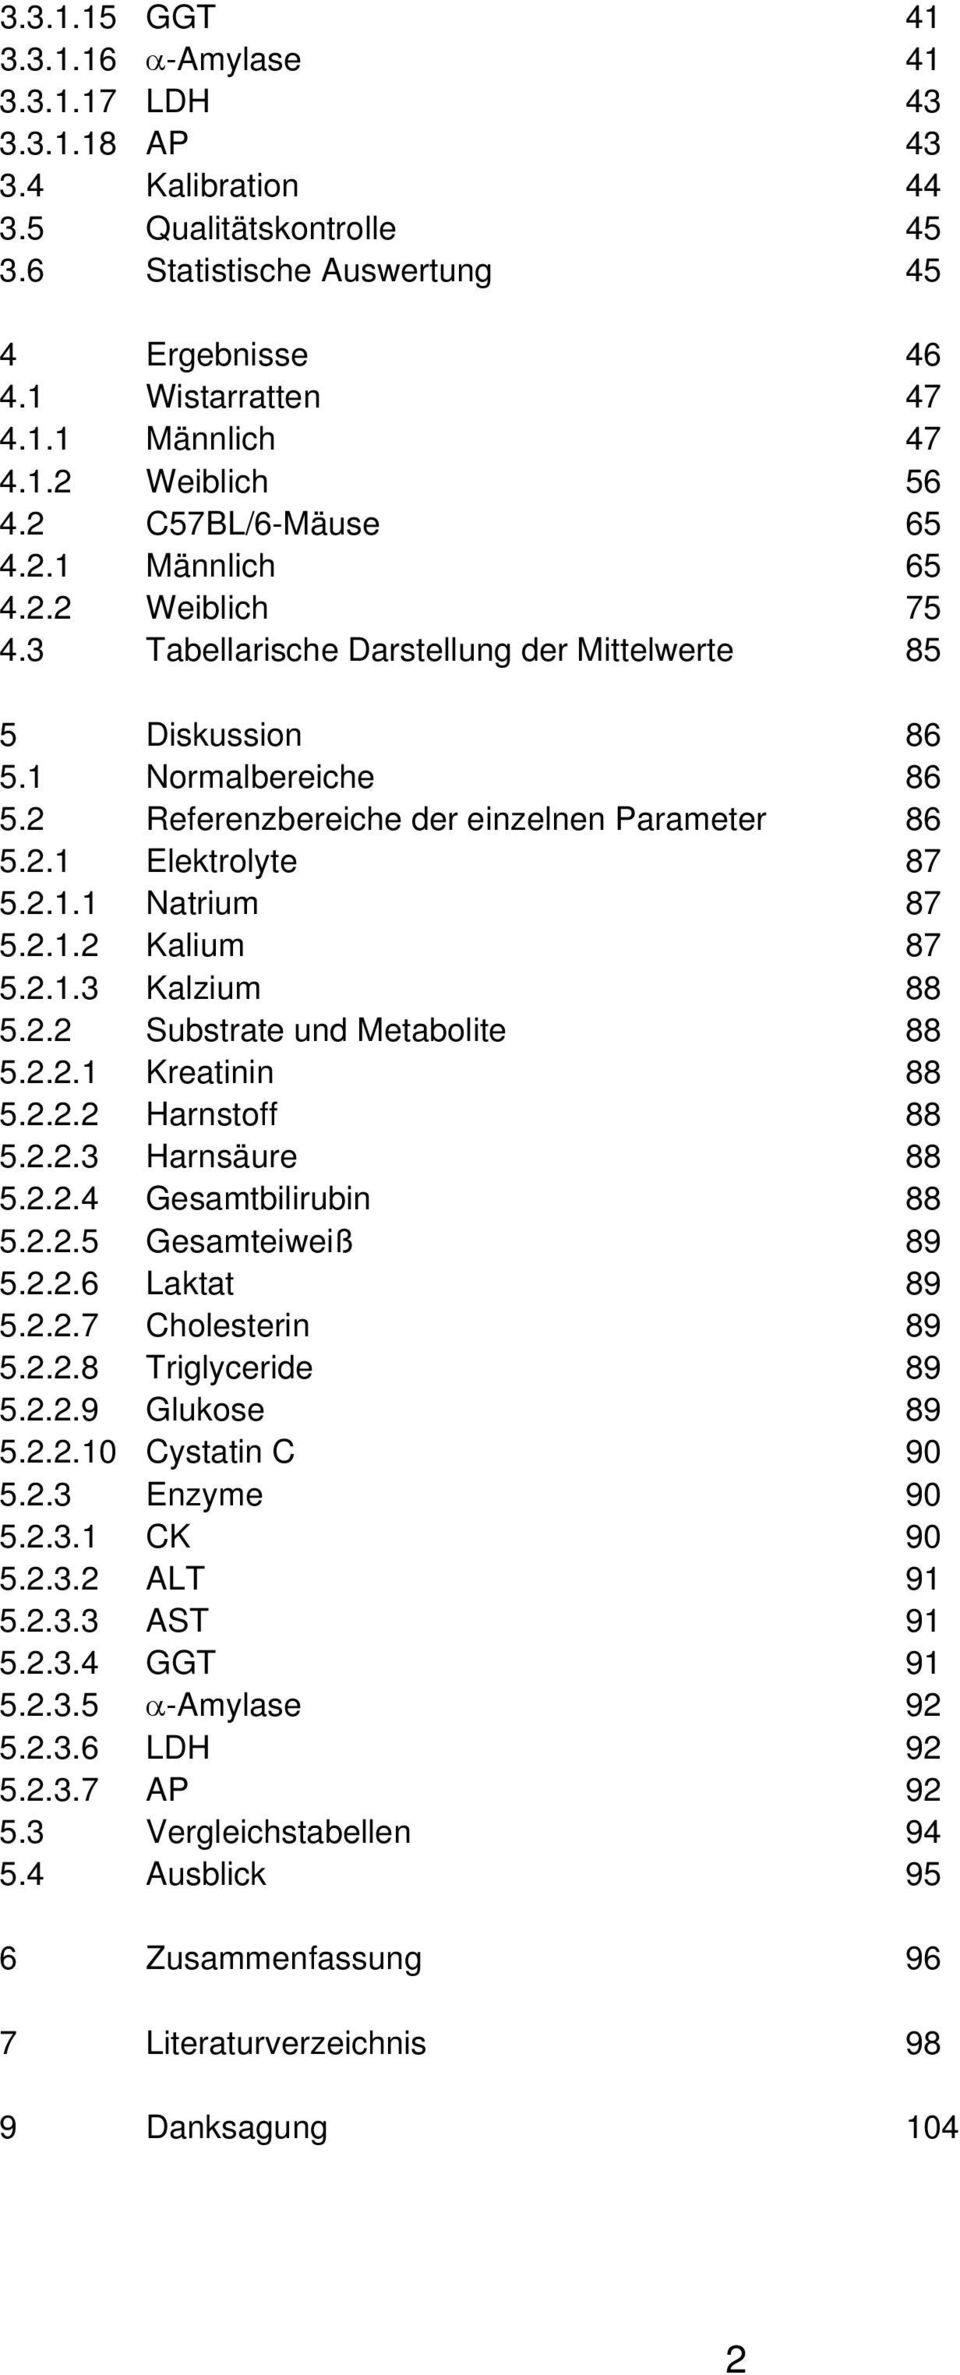 2 Referenzbereiche der einzelnen Parameter 86 5.2.1 Elektrolyte 87 5.2.1.1 Natrium 87 5.2.1.2 Kalium 87 5.2.1.3 Kalzium 88 5.2.2 Substrate und Metabolite 88 5.2.2.1 Kreatinin 88 5.2.2.2 Harnstoff 88 5.